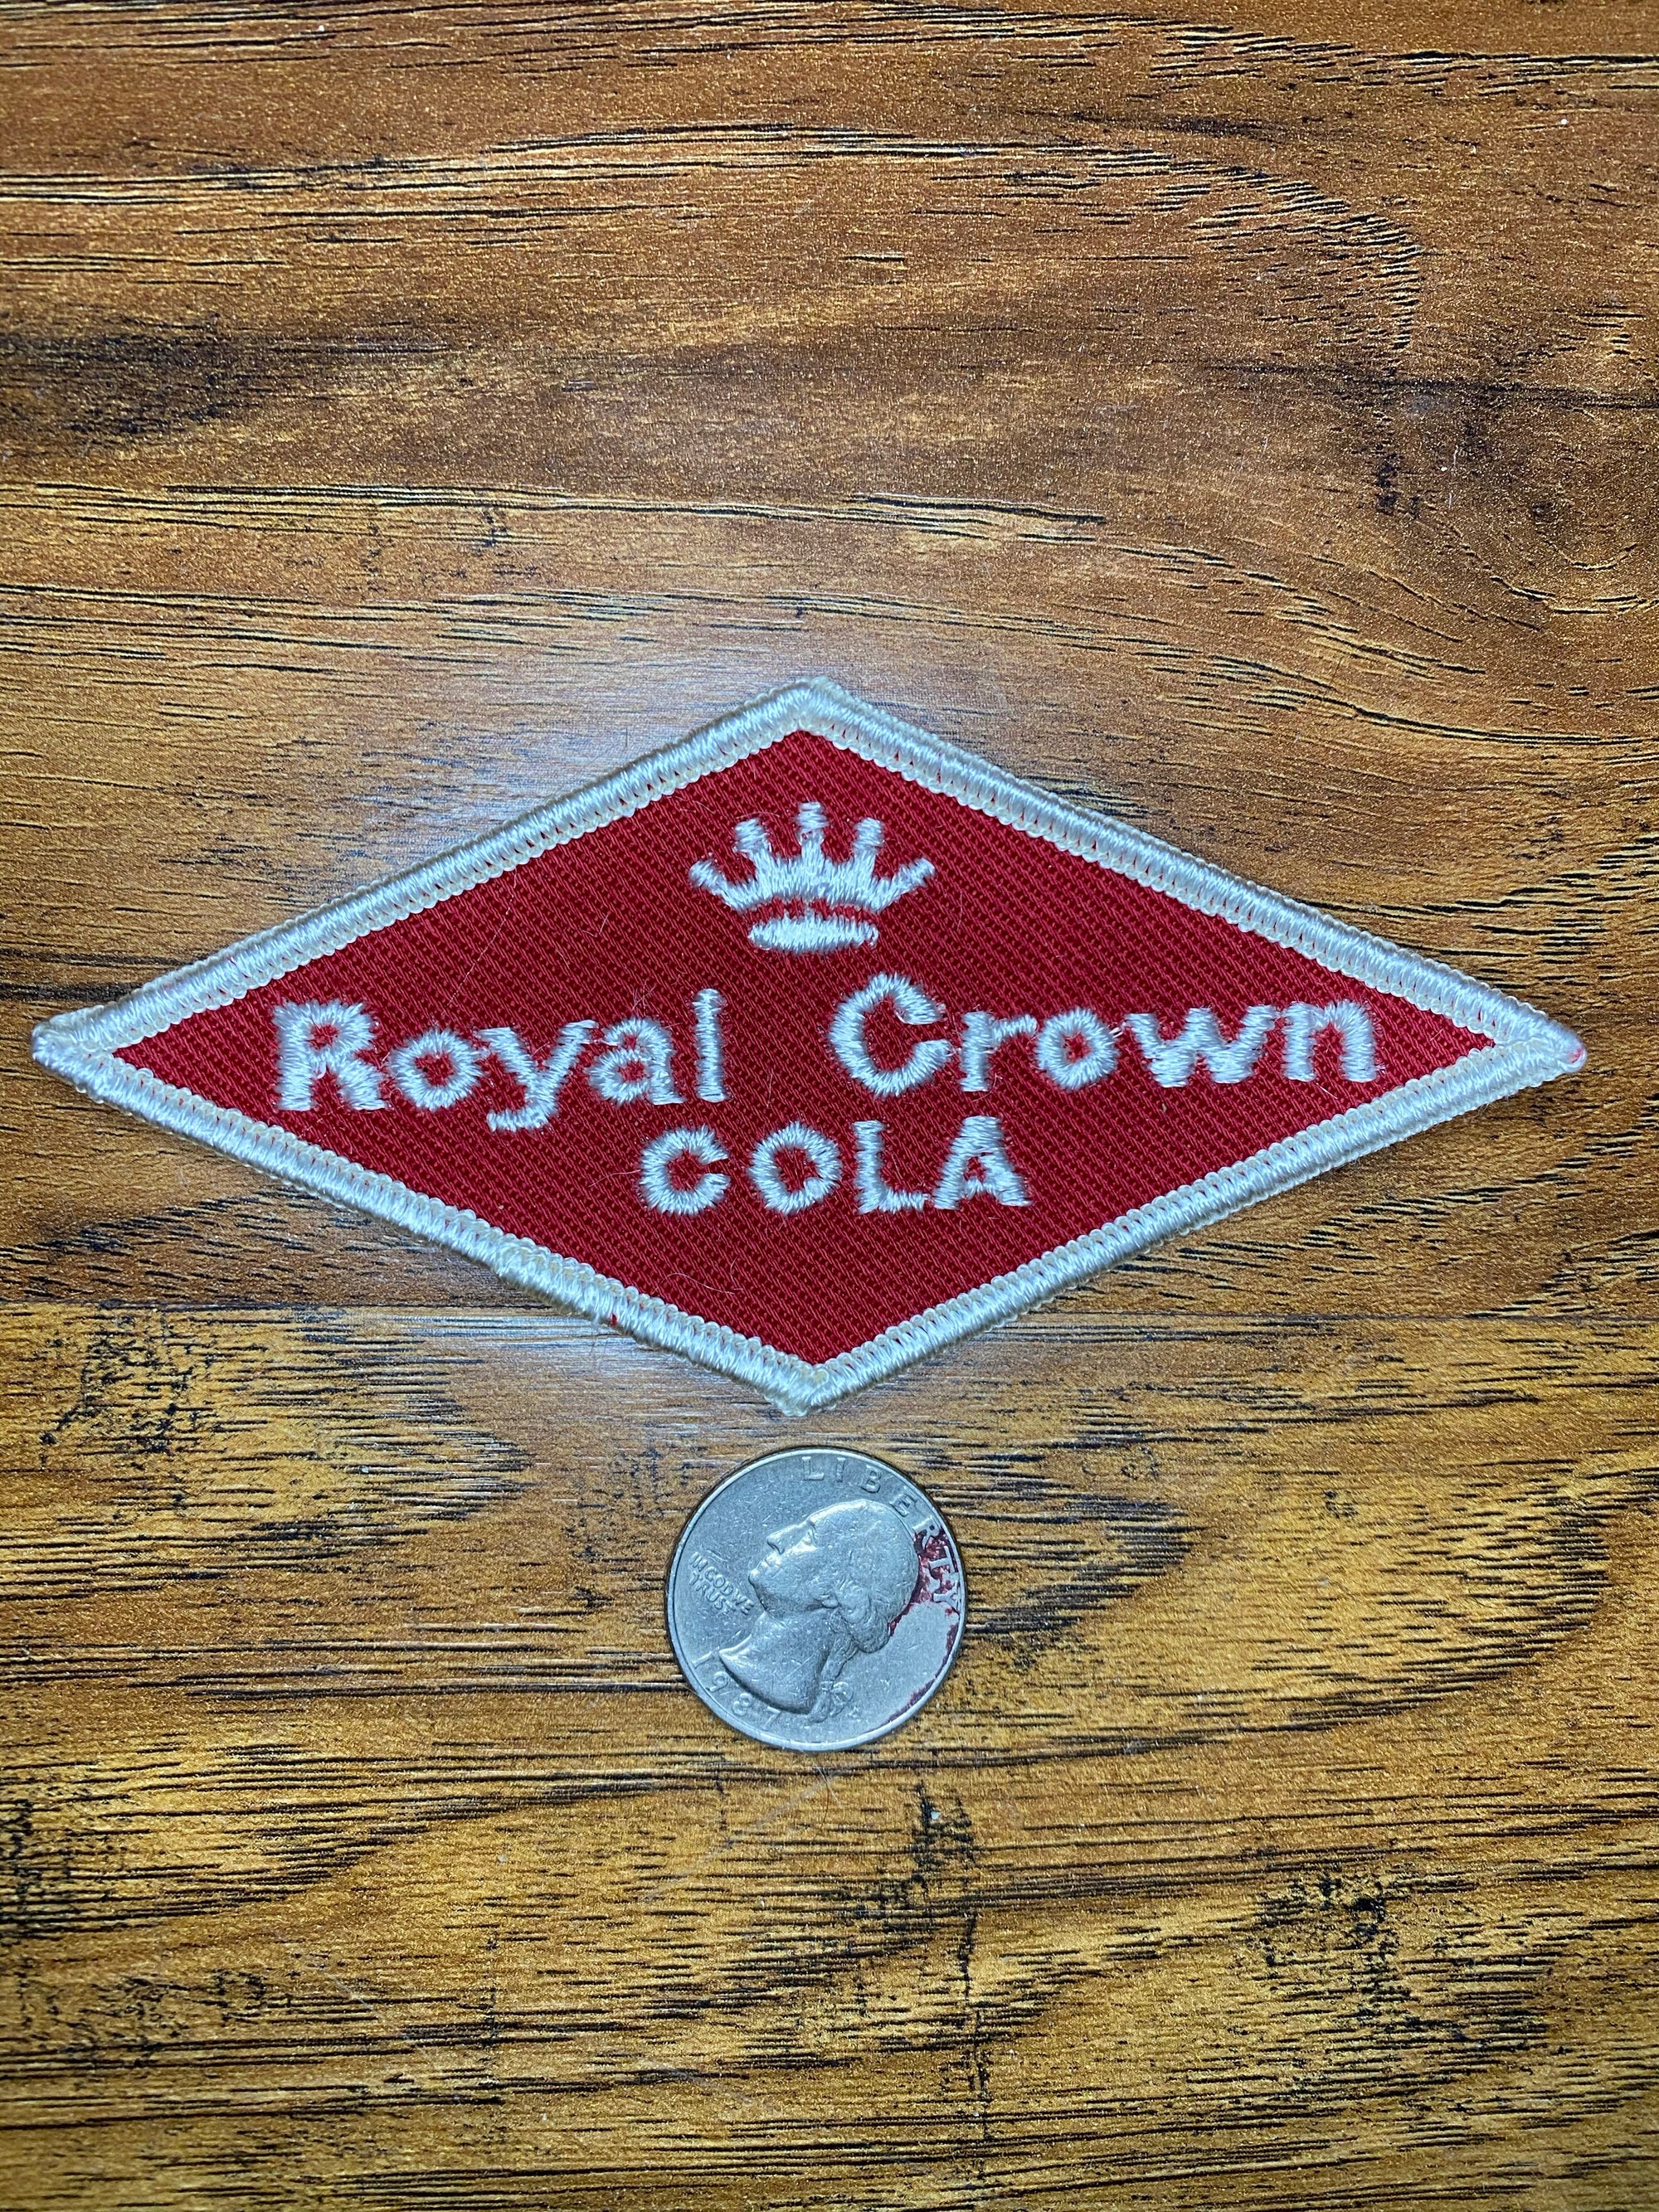 Vintage Royal Crown Cola